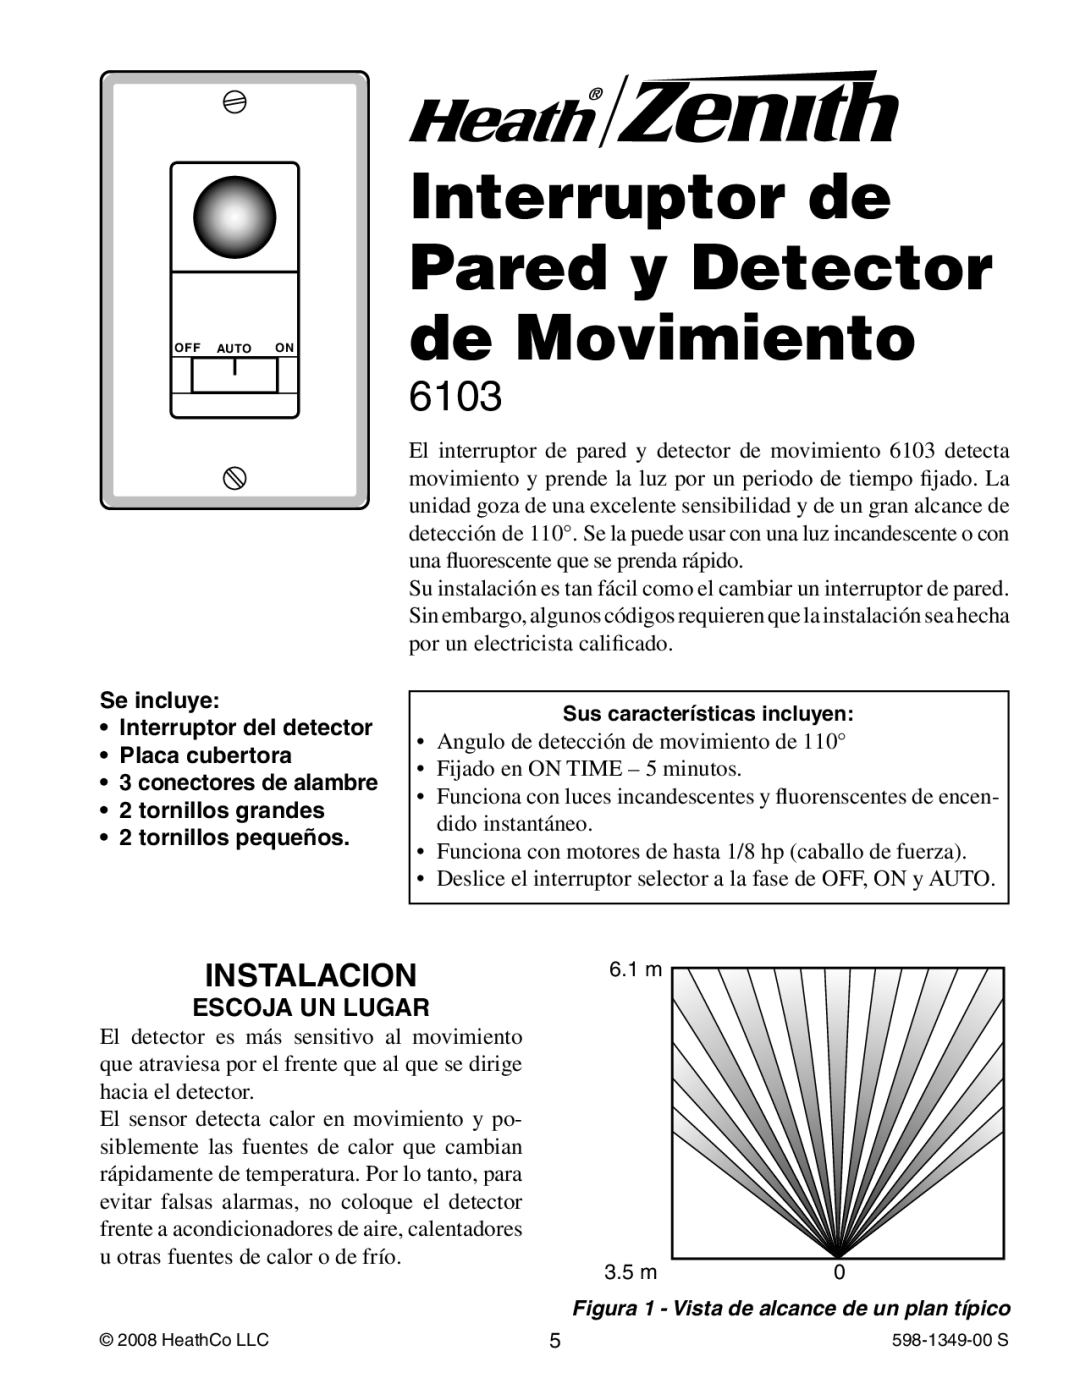 Heath Zenith 6103 manual Interruptor de Pared y Detector de Movimiento, Instalacion, Se incluye Interruptor del detector 